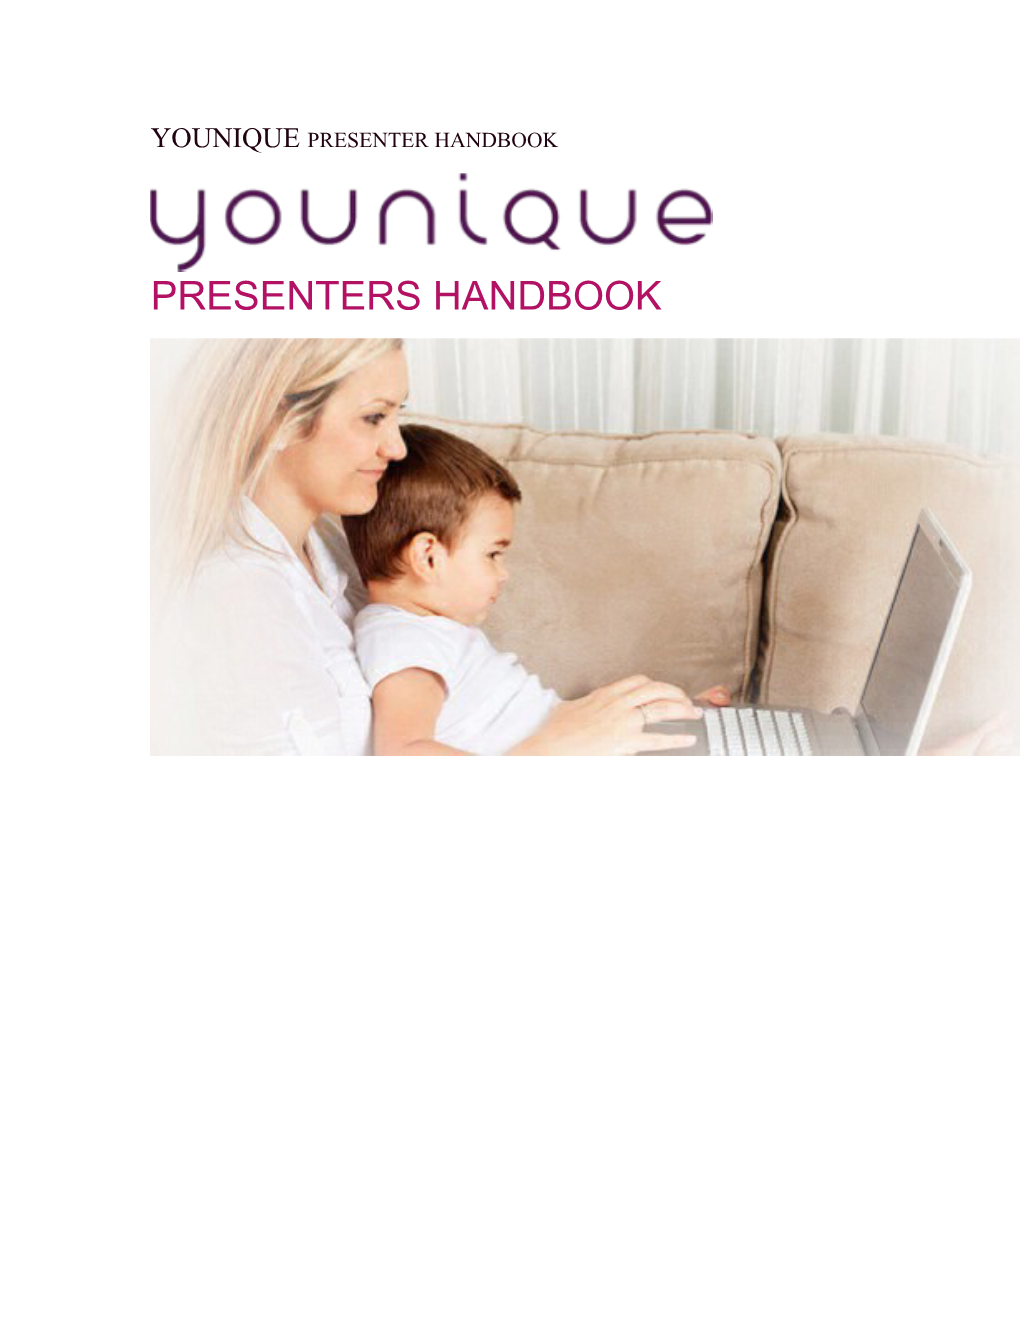 Younique Presenter Handbook